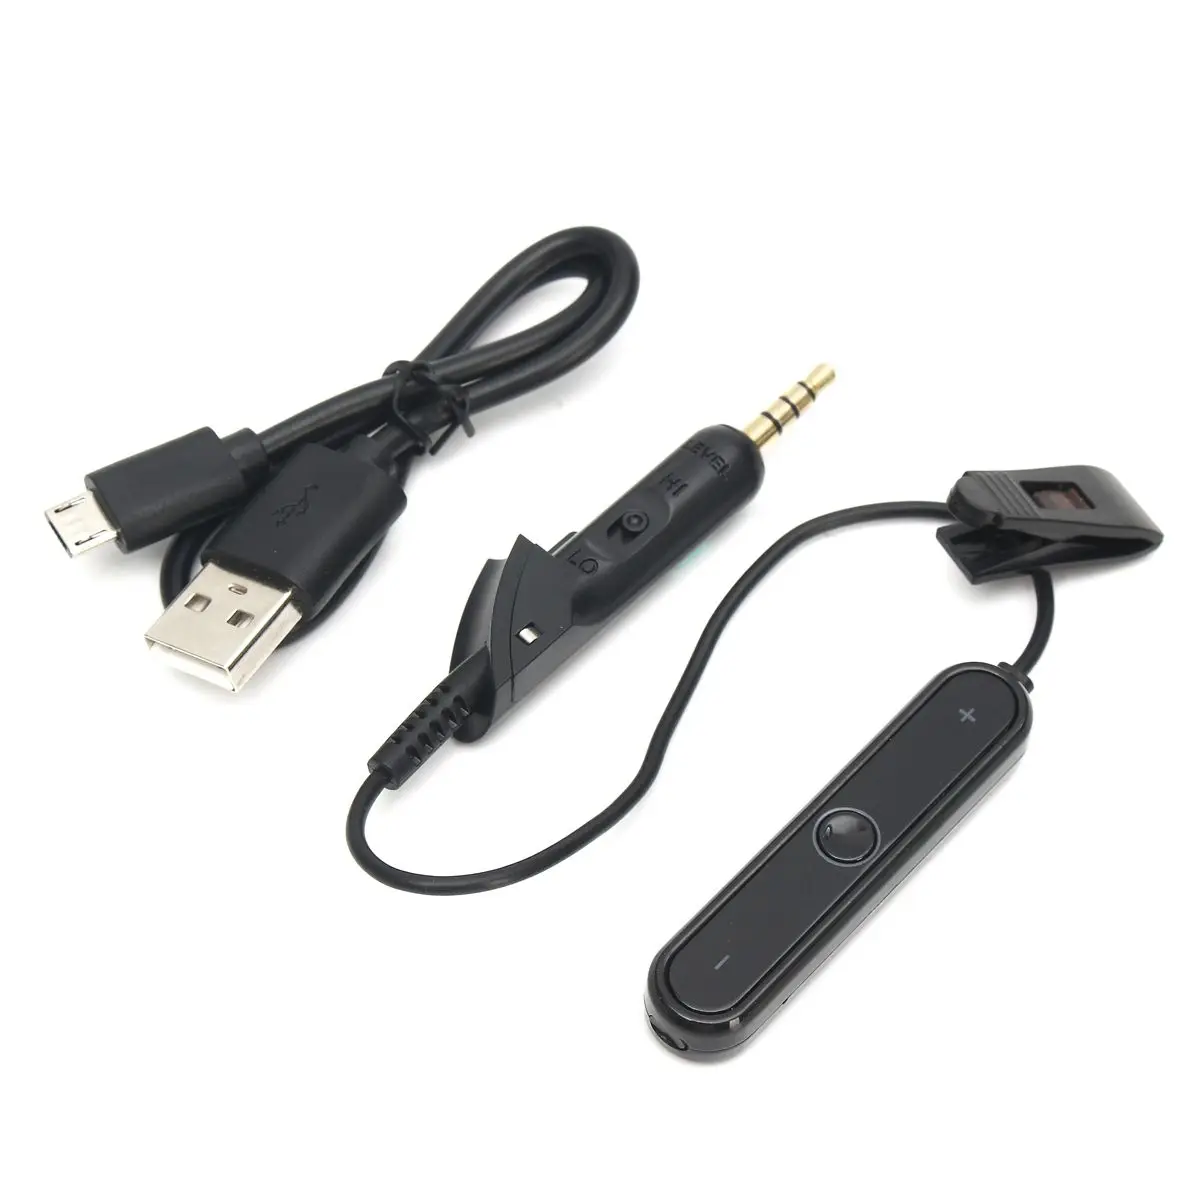 Bluetooth usb-радиоприемник адаптер конвертер кабель для бозе QC2/QC15 гарнитура для iPhone, для iPad, для Macbook